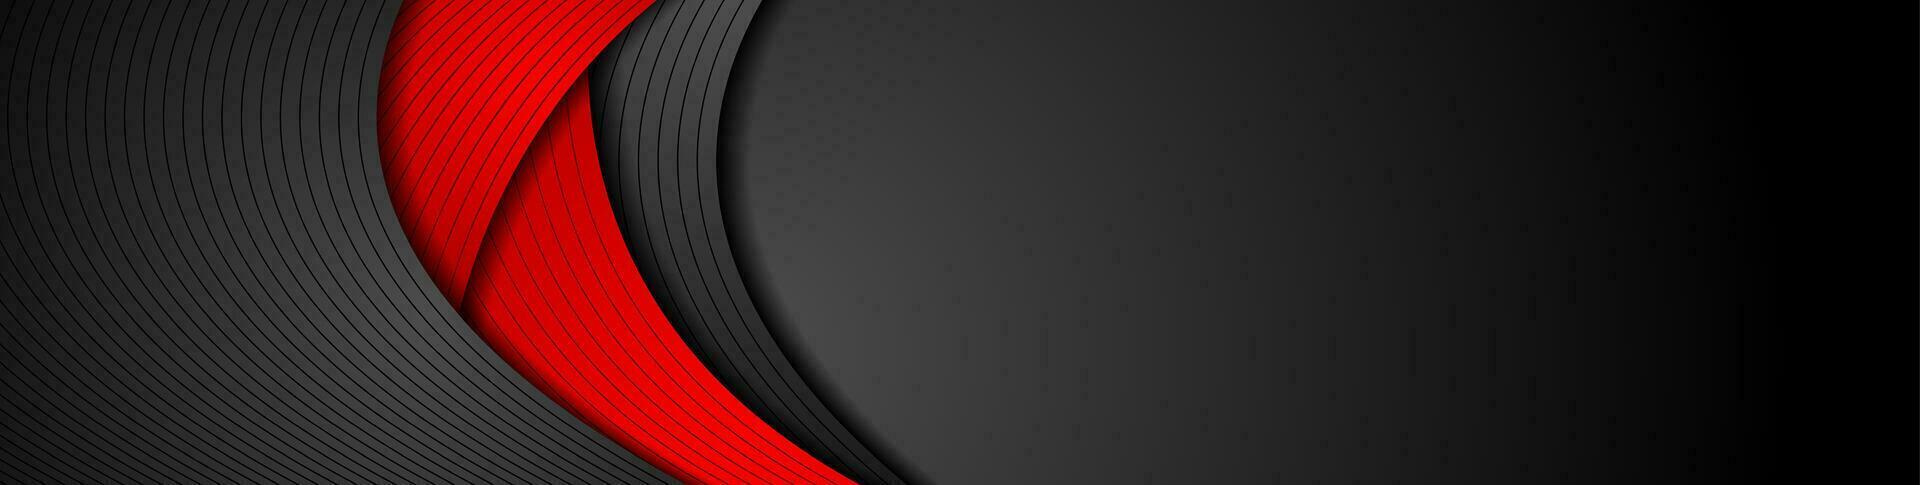 rot und schwarz abstrakt wellig korporativ Banner Design vektor